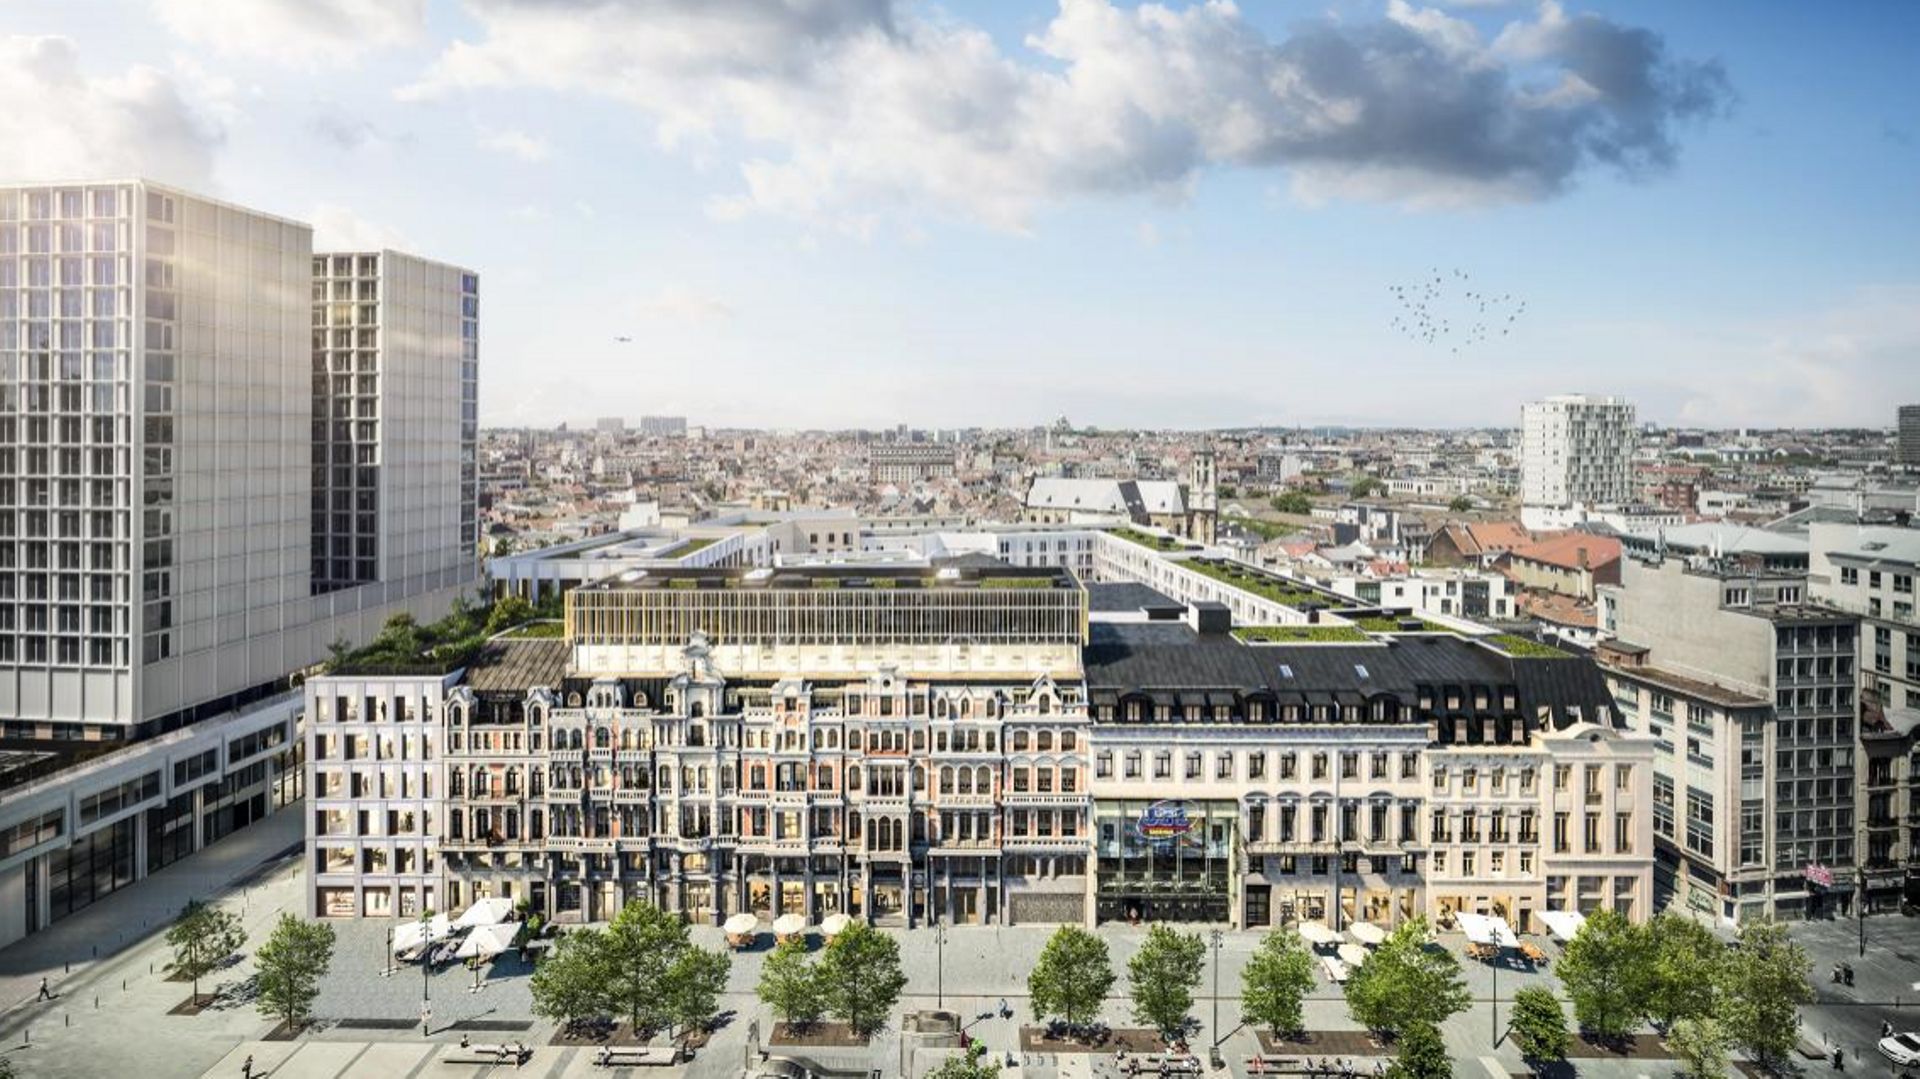 Le projet prévoit une démolition et reconstruction d’un hôtel, de logements, de bureaux et de commerces, place De Brouckère.